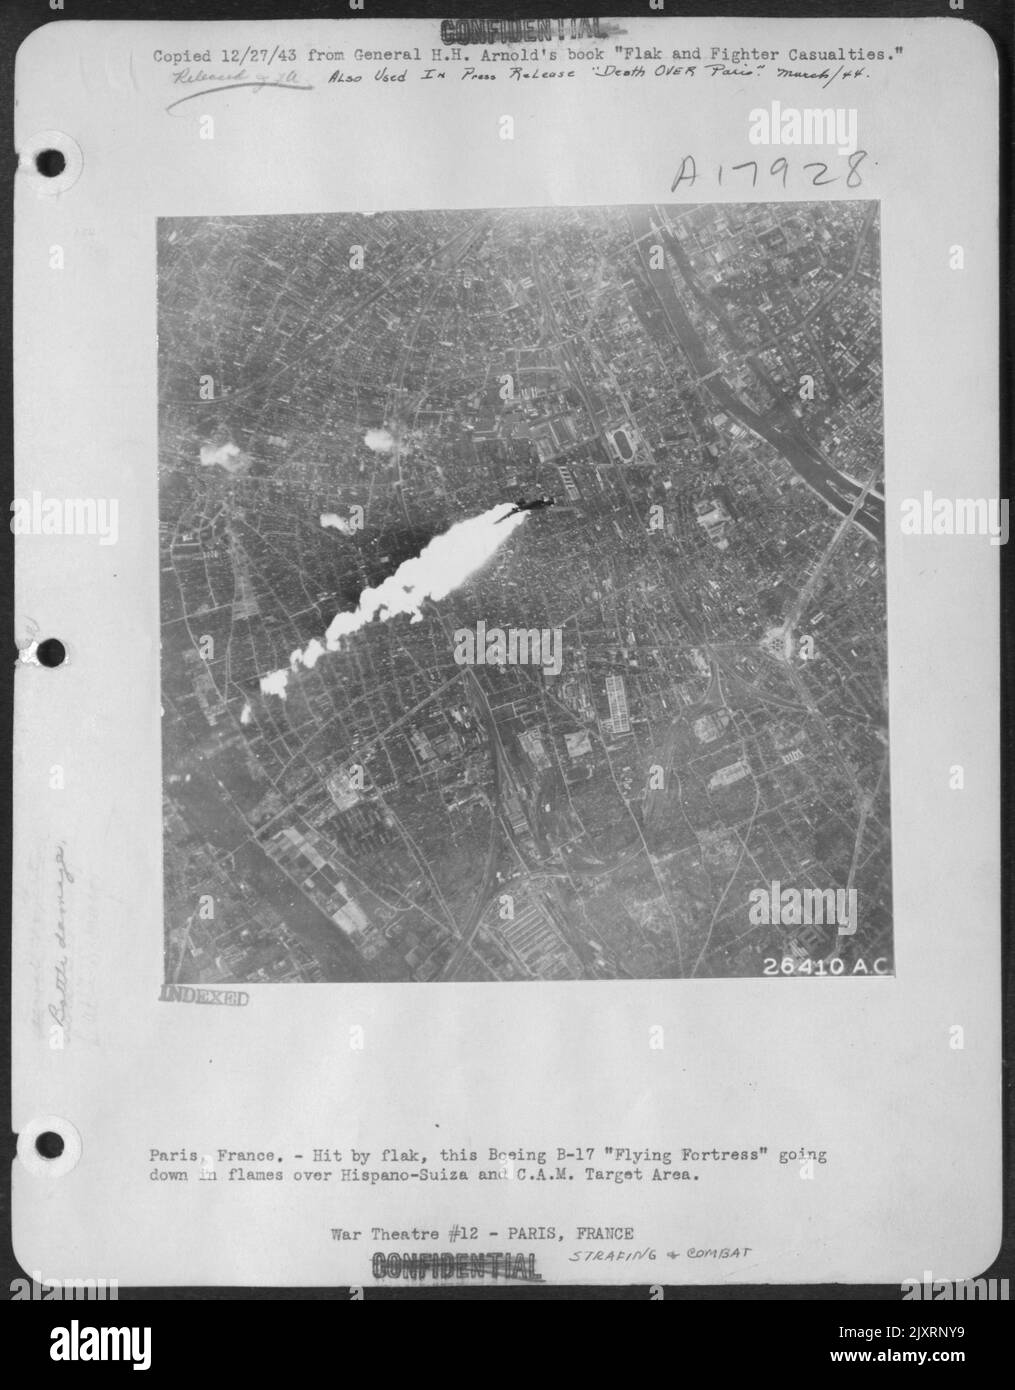 Parigi, Francia.-colpito dal flak, questo Boeing B-17 'Fortezza volante' scendendo in fiamme sopra Hispano-Suiza e C.A.M. Area di destinazione. Foto Stock